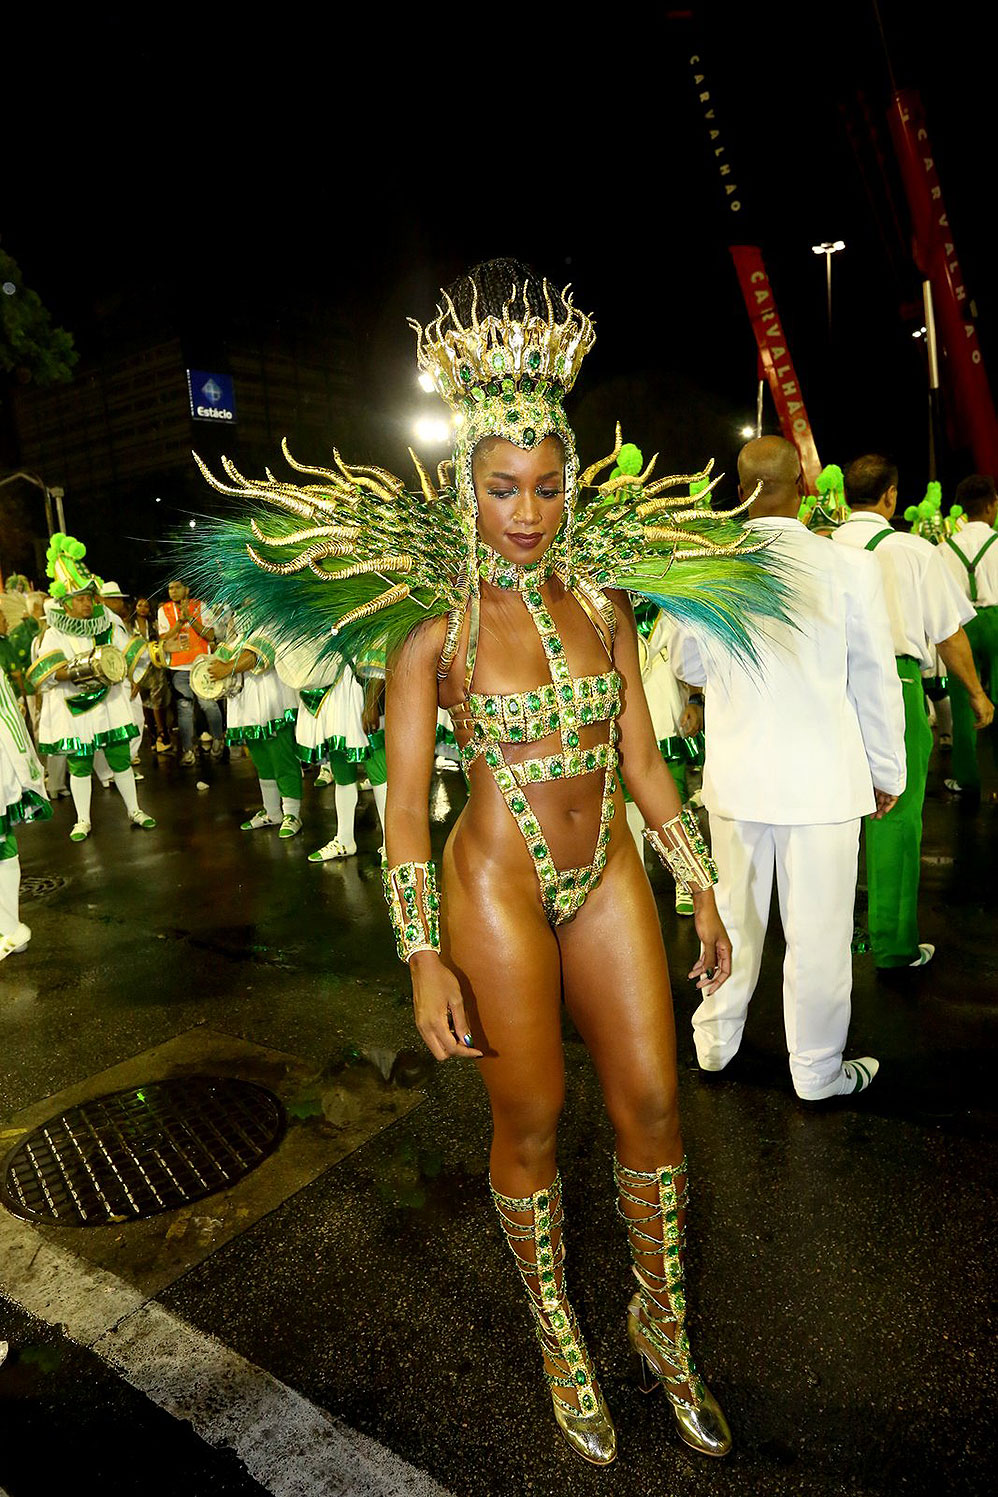 Iza mostrou toda sua beleza natural durante desfile na Sapucaí